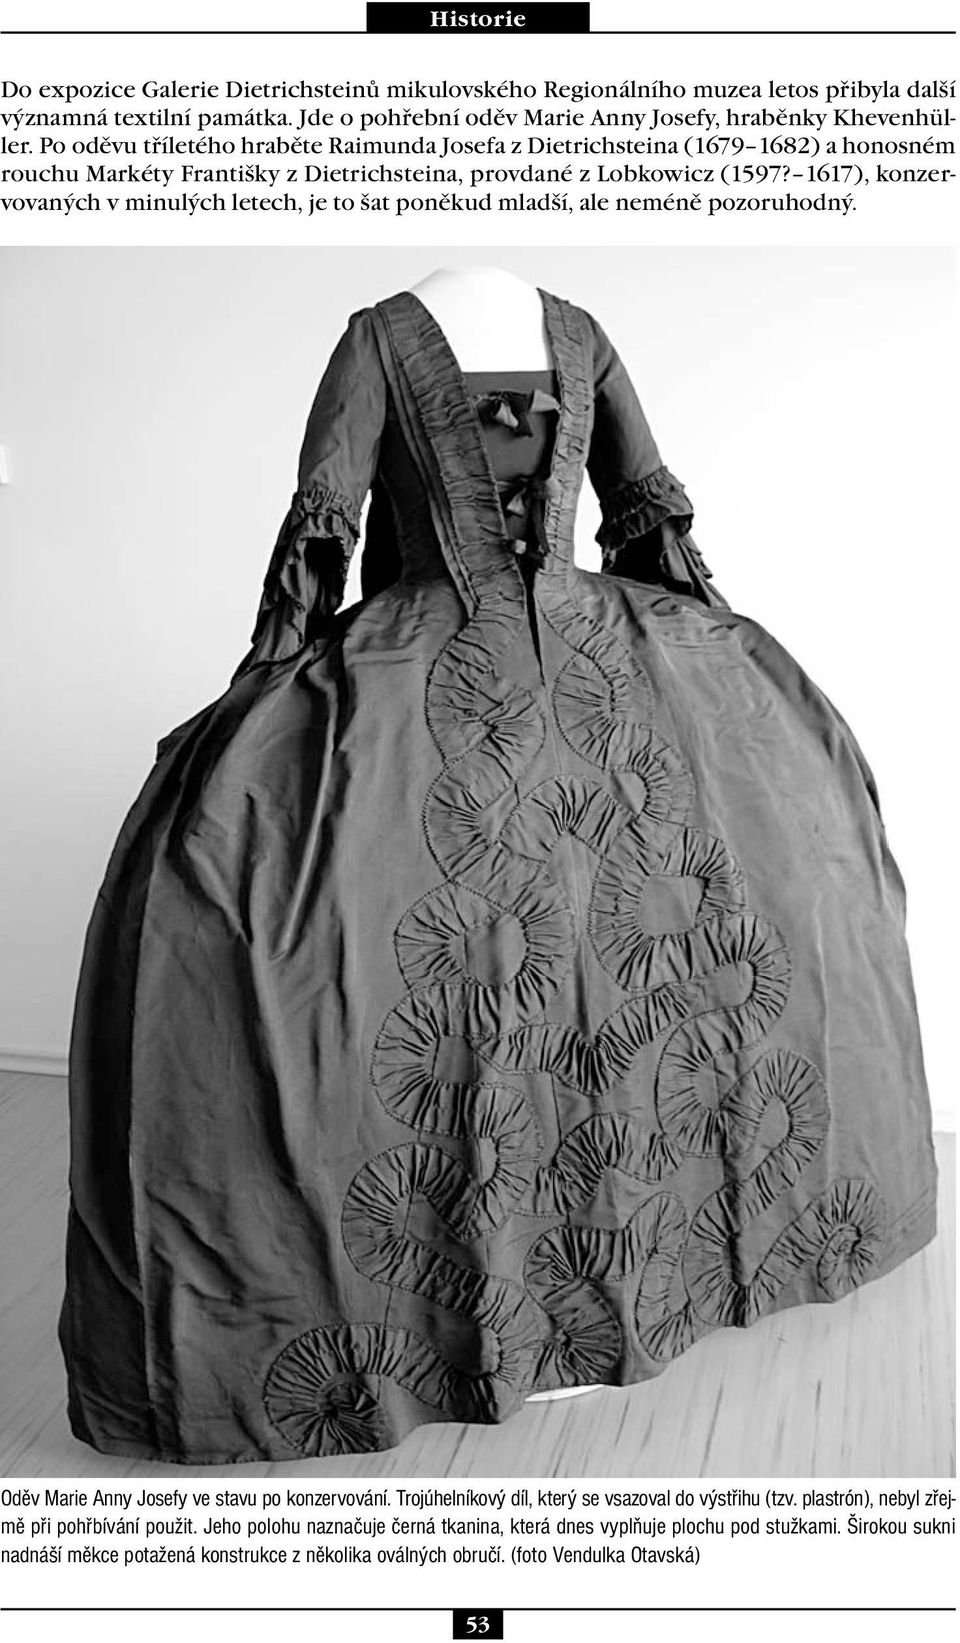 1617), konzervovaných v minulých letech, je to šat poněkud mladší, ale neméně pozoruhodný. Oděv Marie Anny Josefy ve stavu po konzervování.